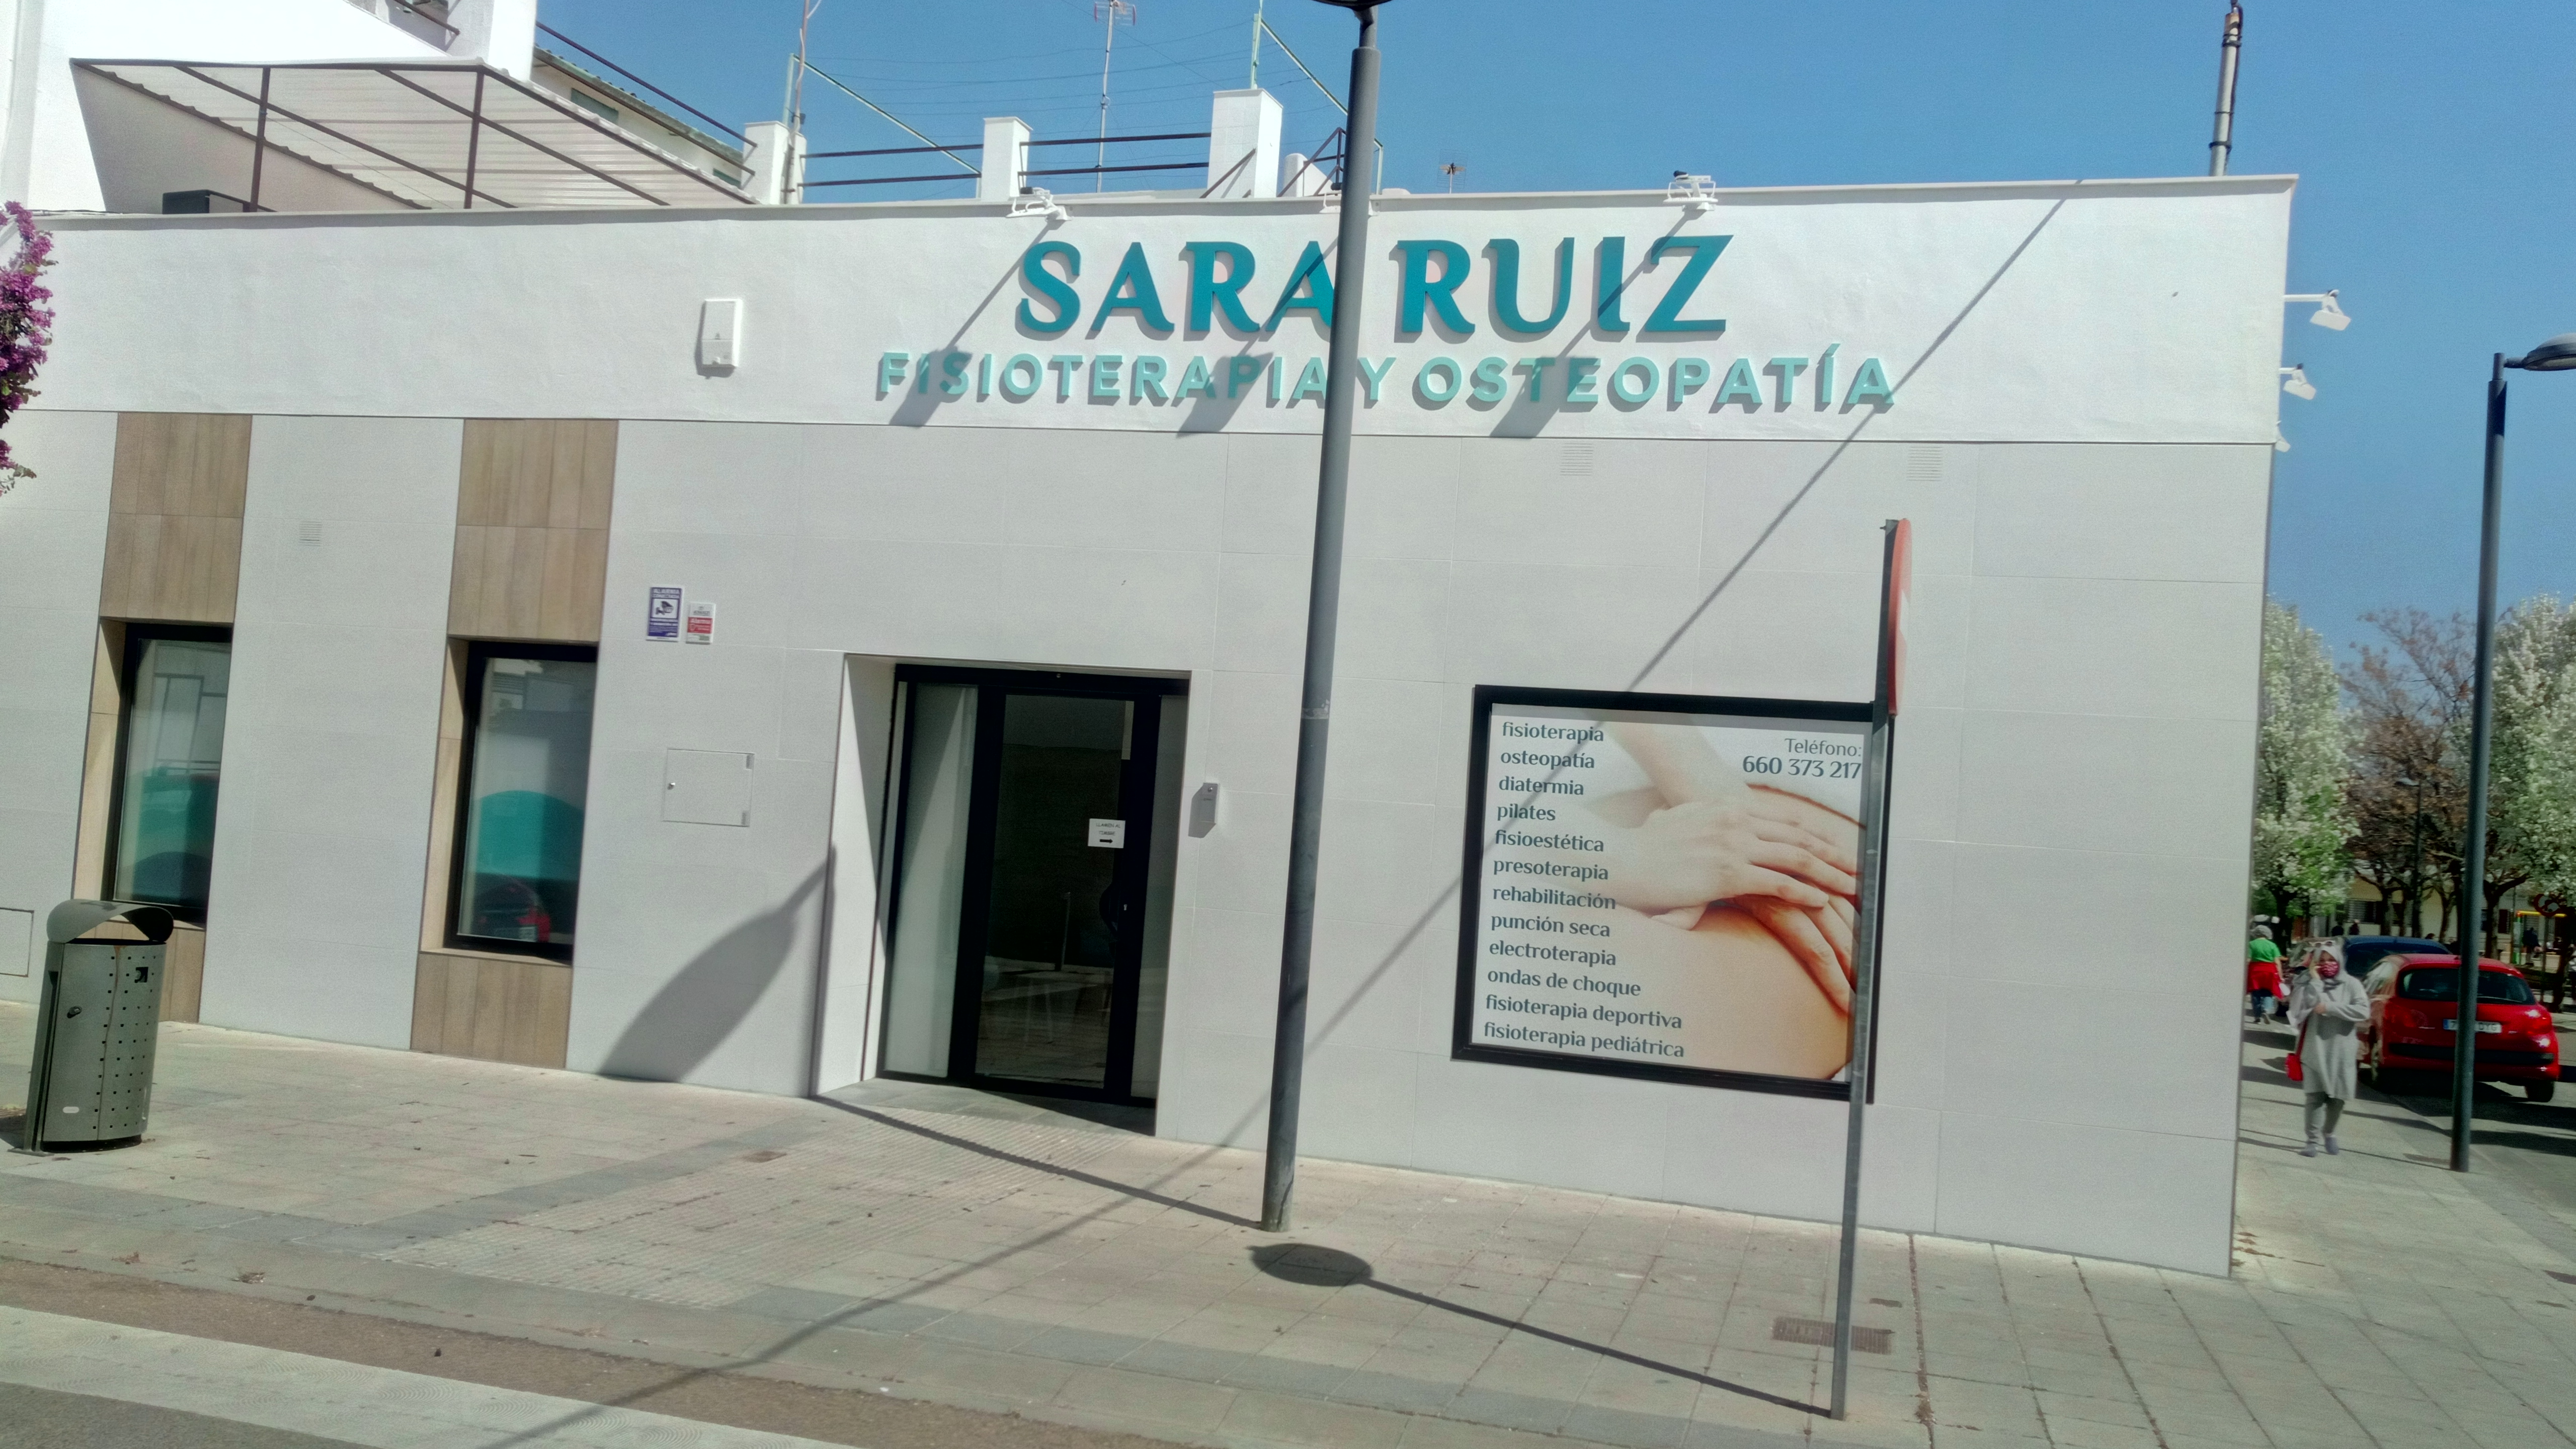 Clínica Fisio en Almendralejo Osteopatía Sara Ruiz 